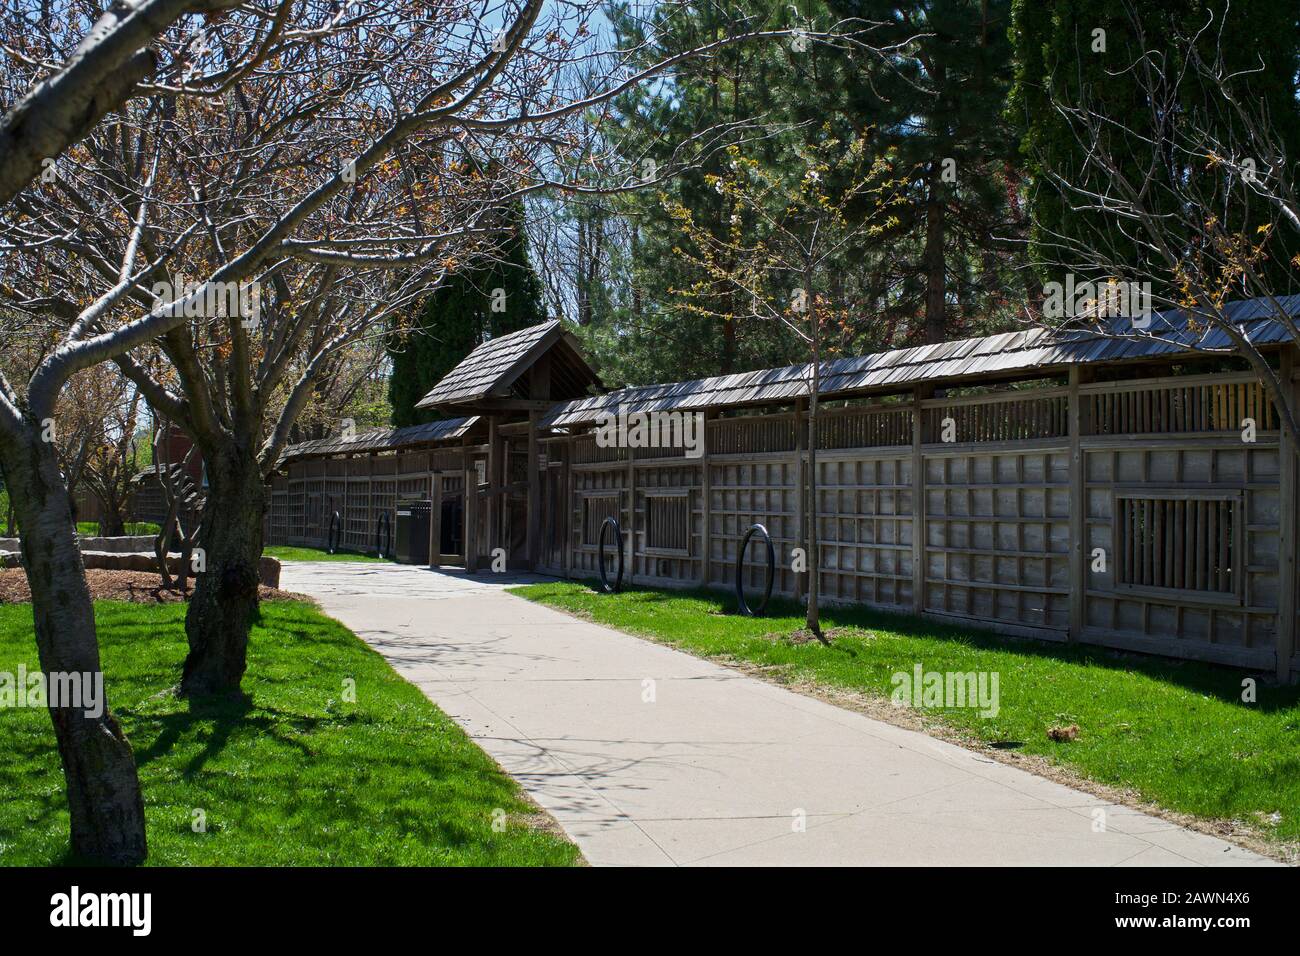 Jardin japonais avec clôtures japonaises traditionnelles dans un parc public, Ontario, Canada Banque D'Images